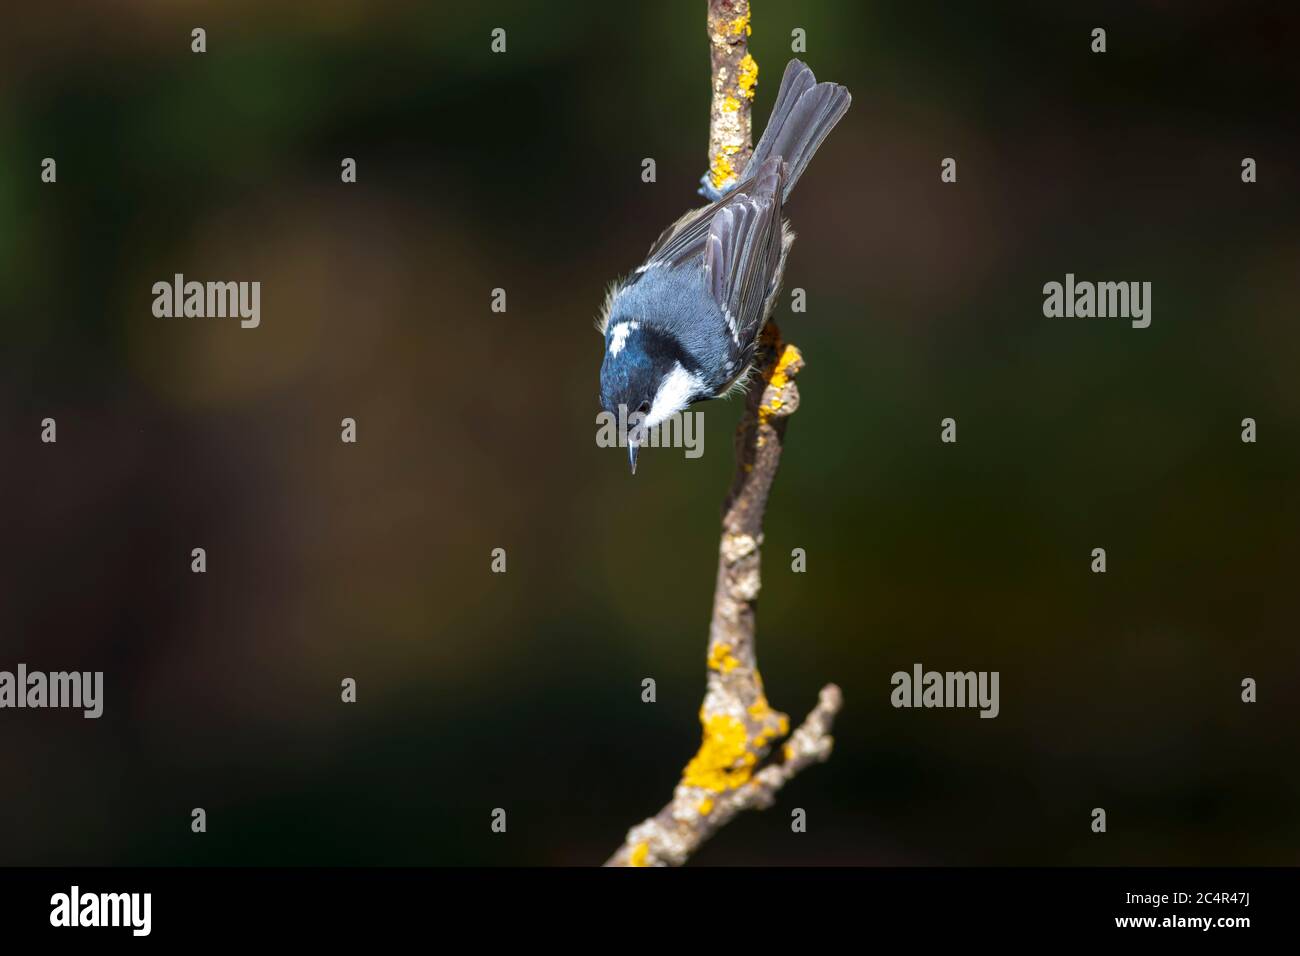 Cute little bird. Green nature background. Park, garden forest bird: Coal tit. Stock Photo